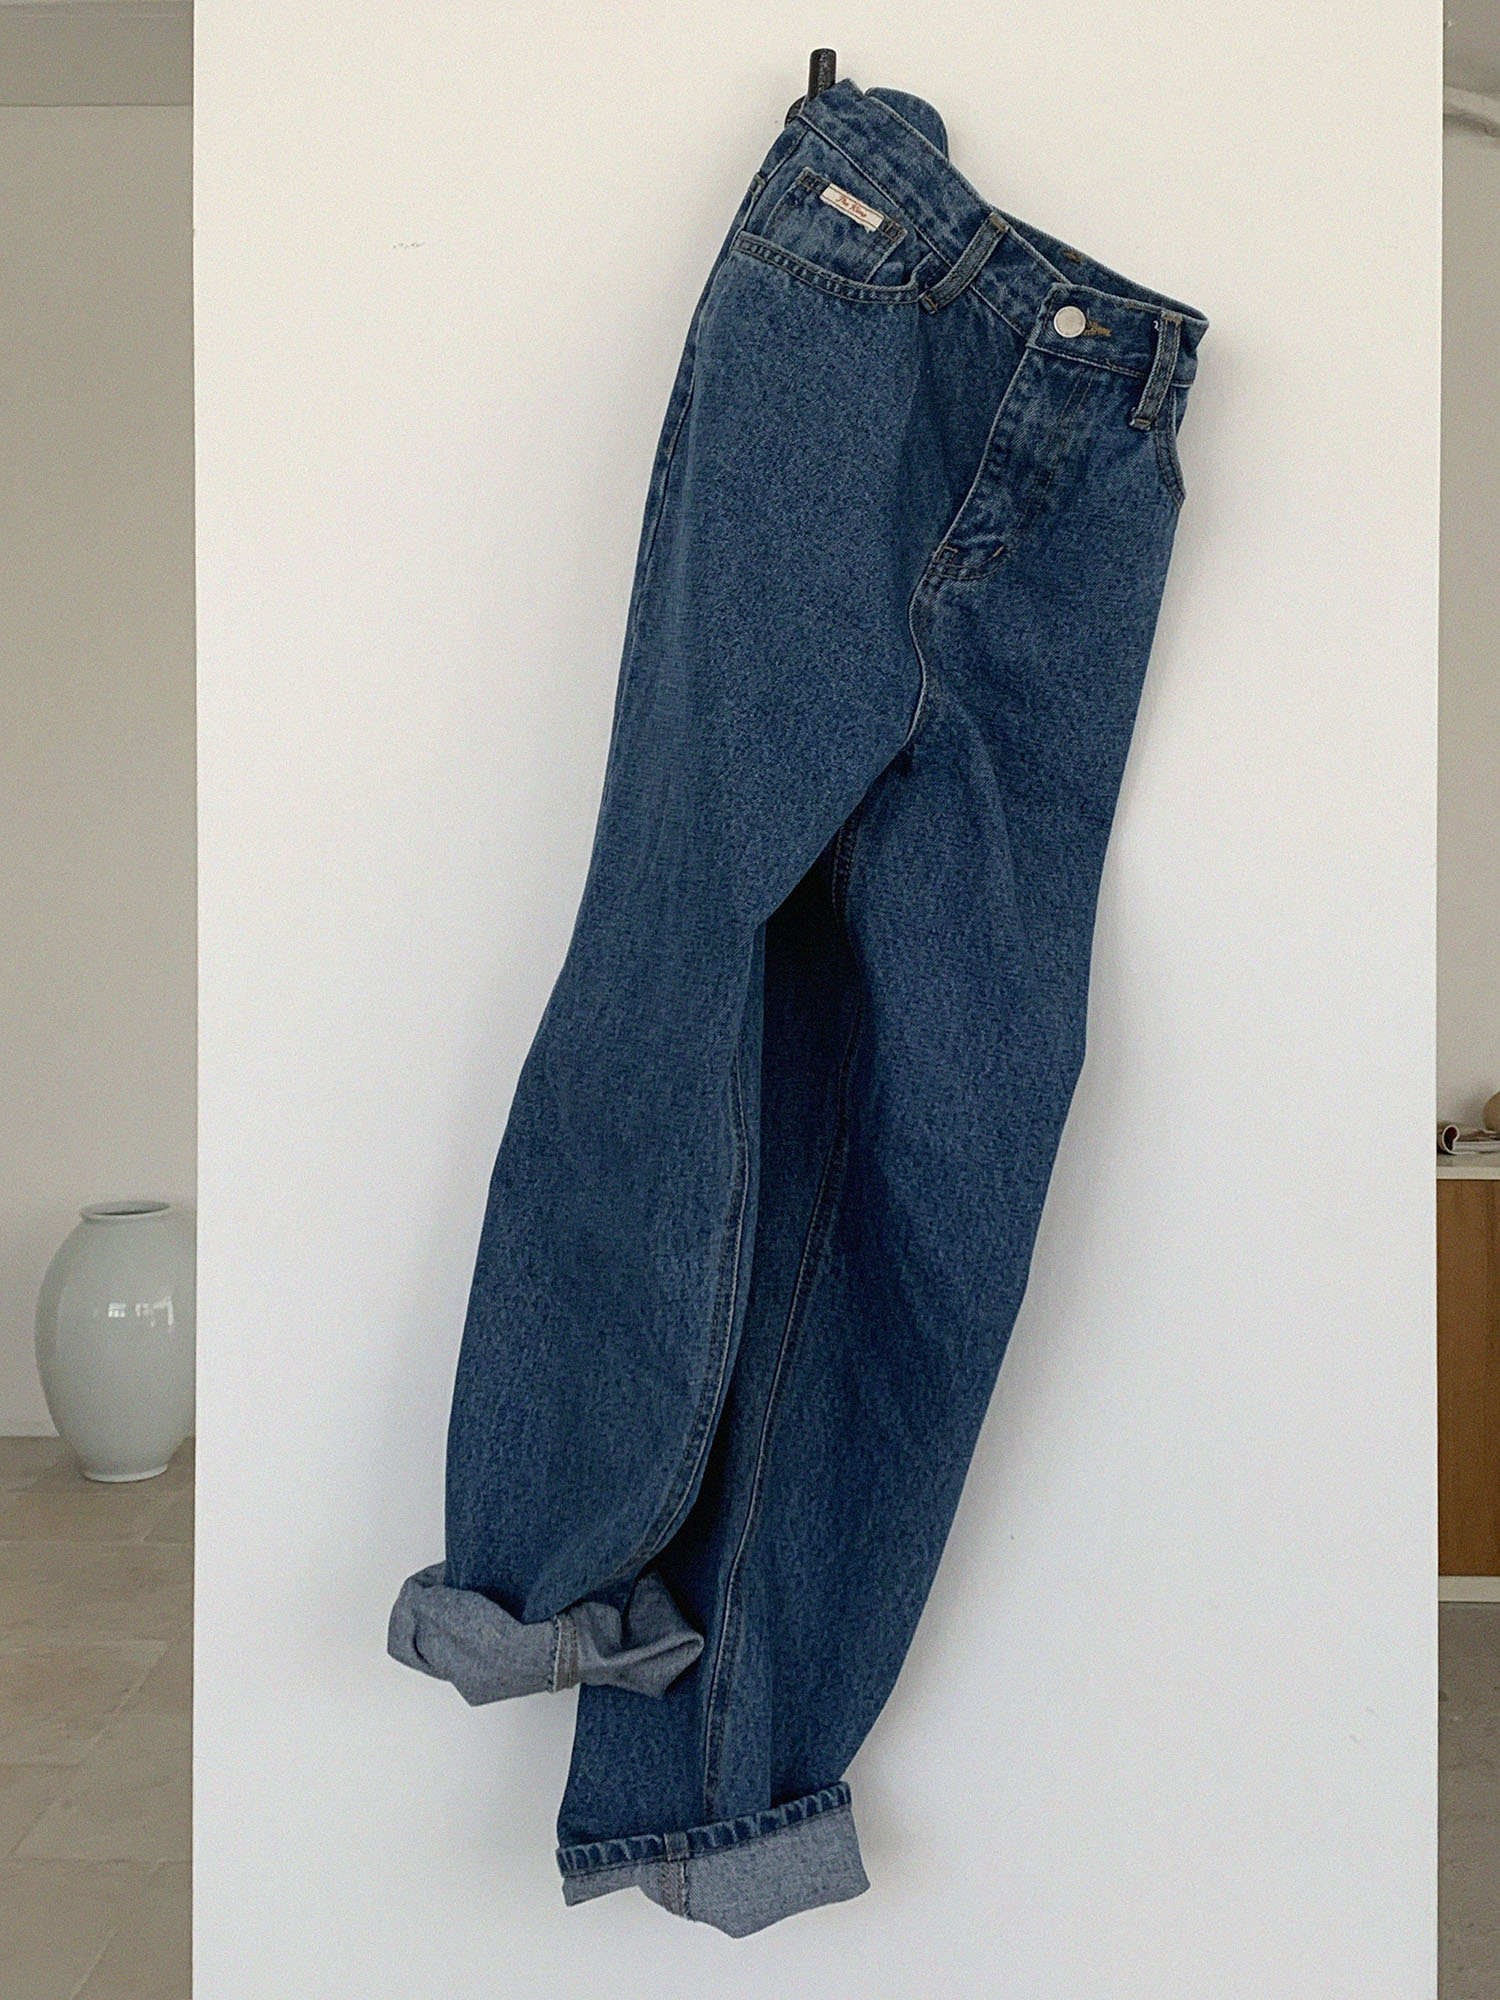 Boyfit jeans